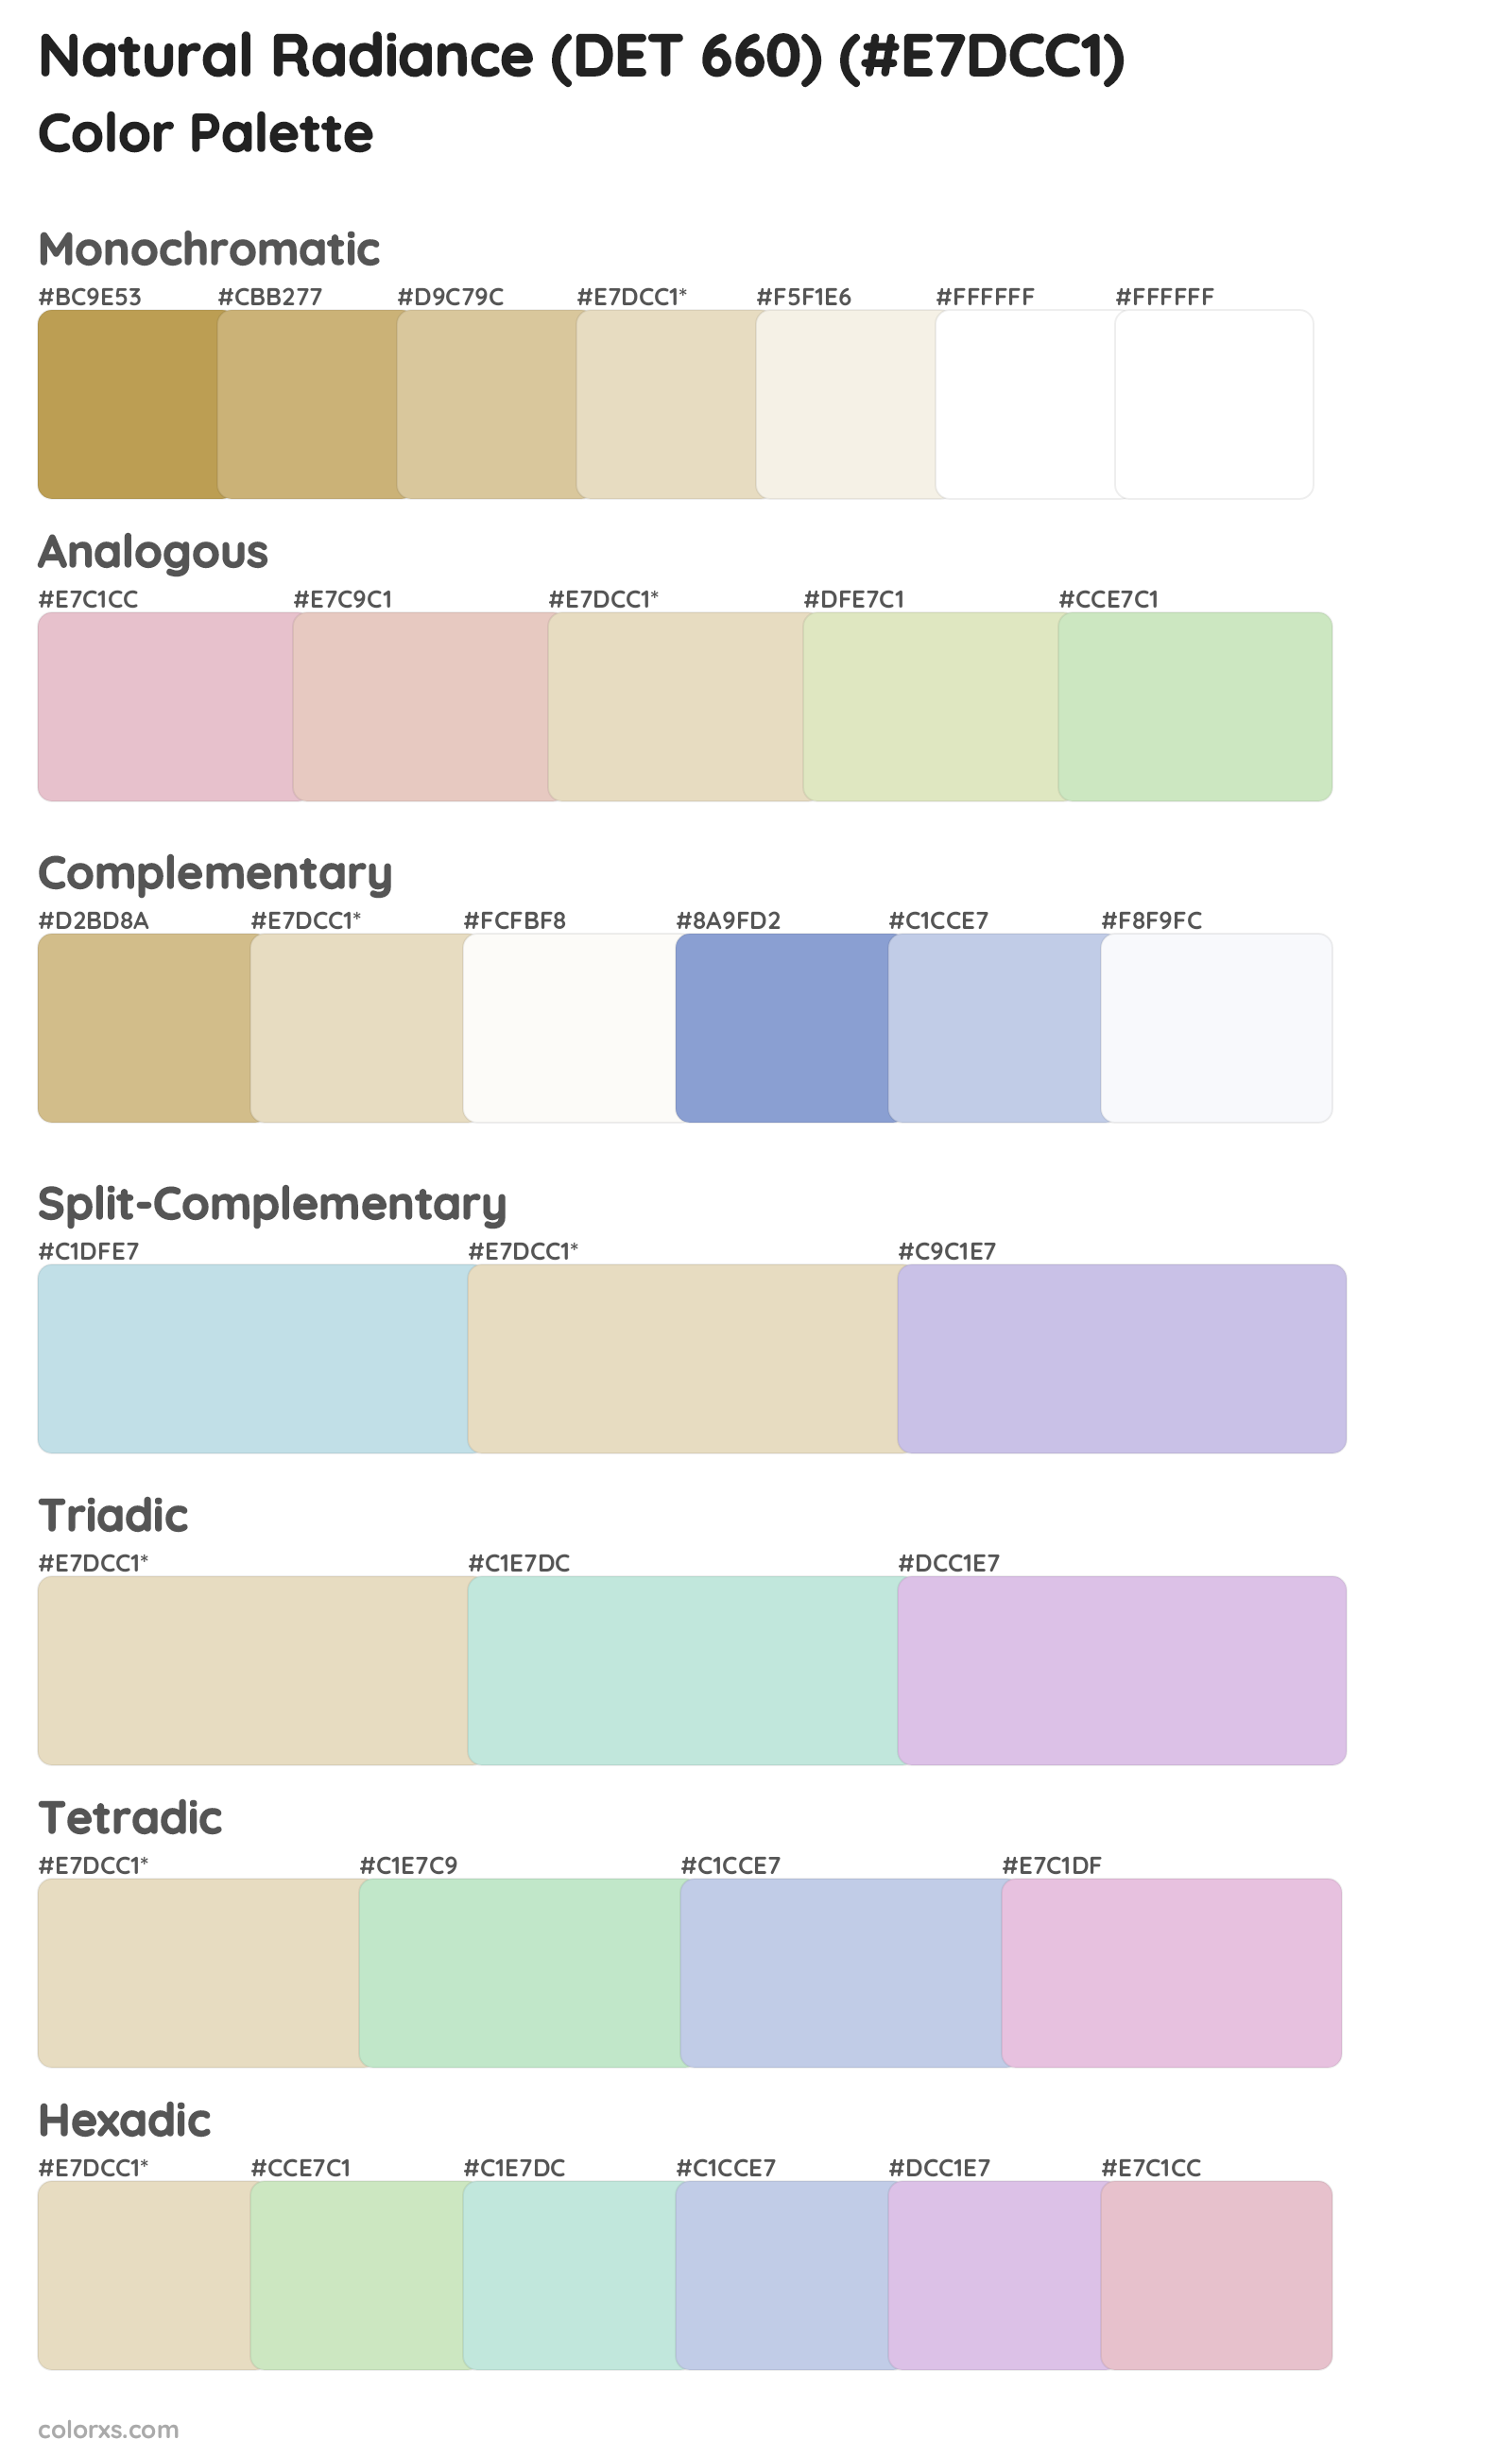 Natural Radiance (DET 660) Color Scheme Palettes